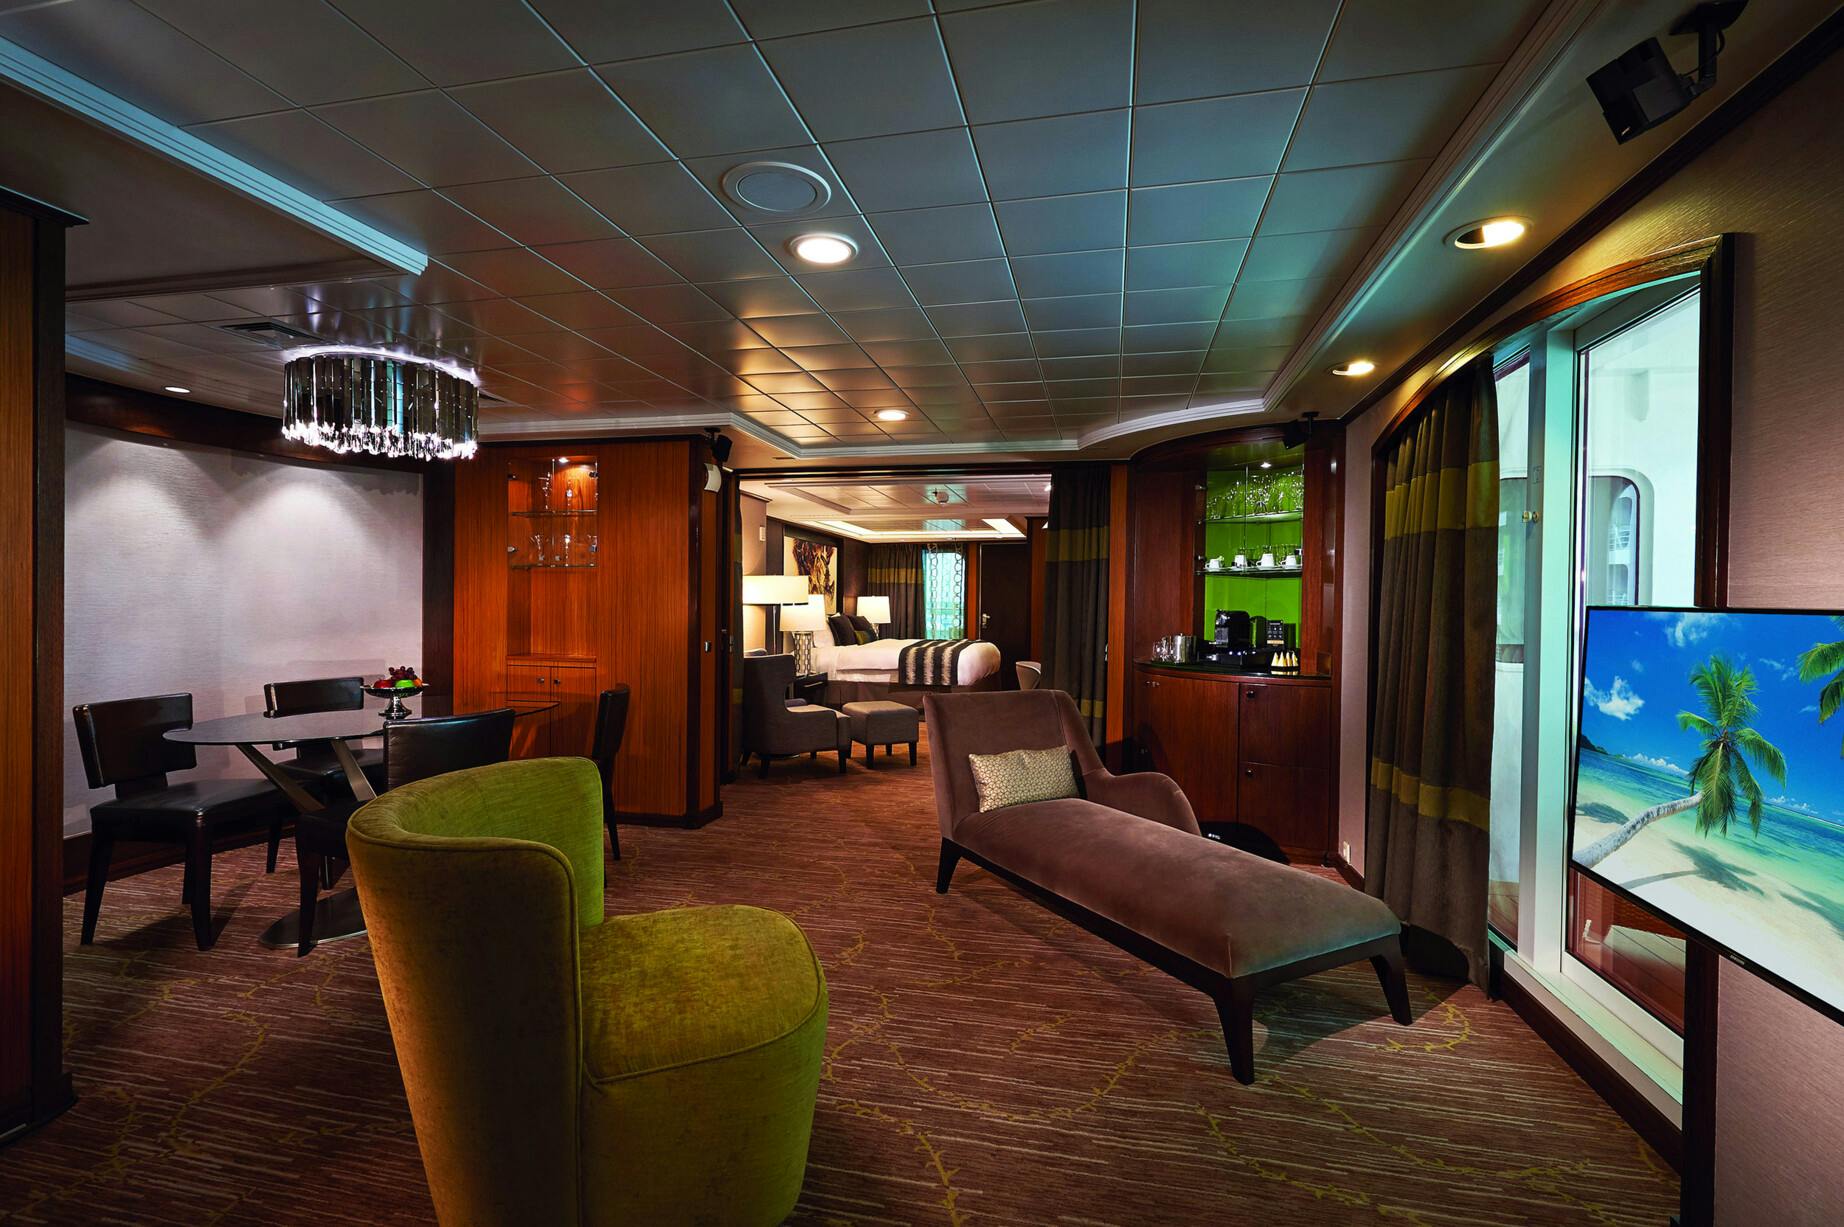 Norwegian Jade - Norwegian Cruise Line - The Haven Owner's Suite mit großem Balkon